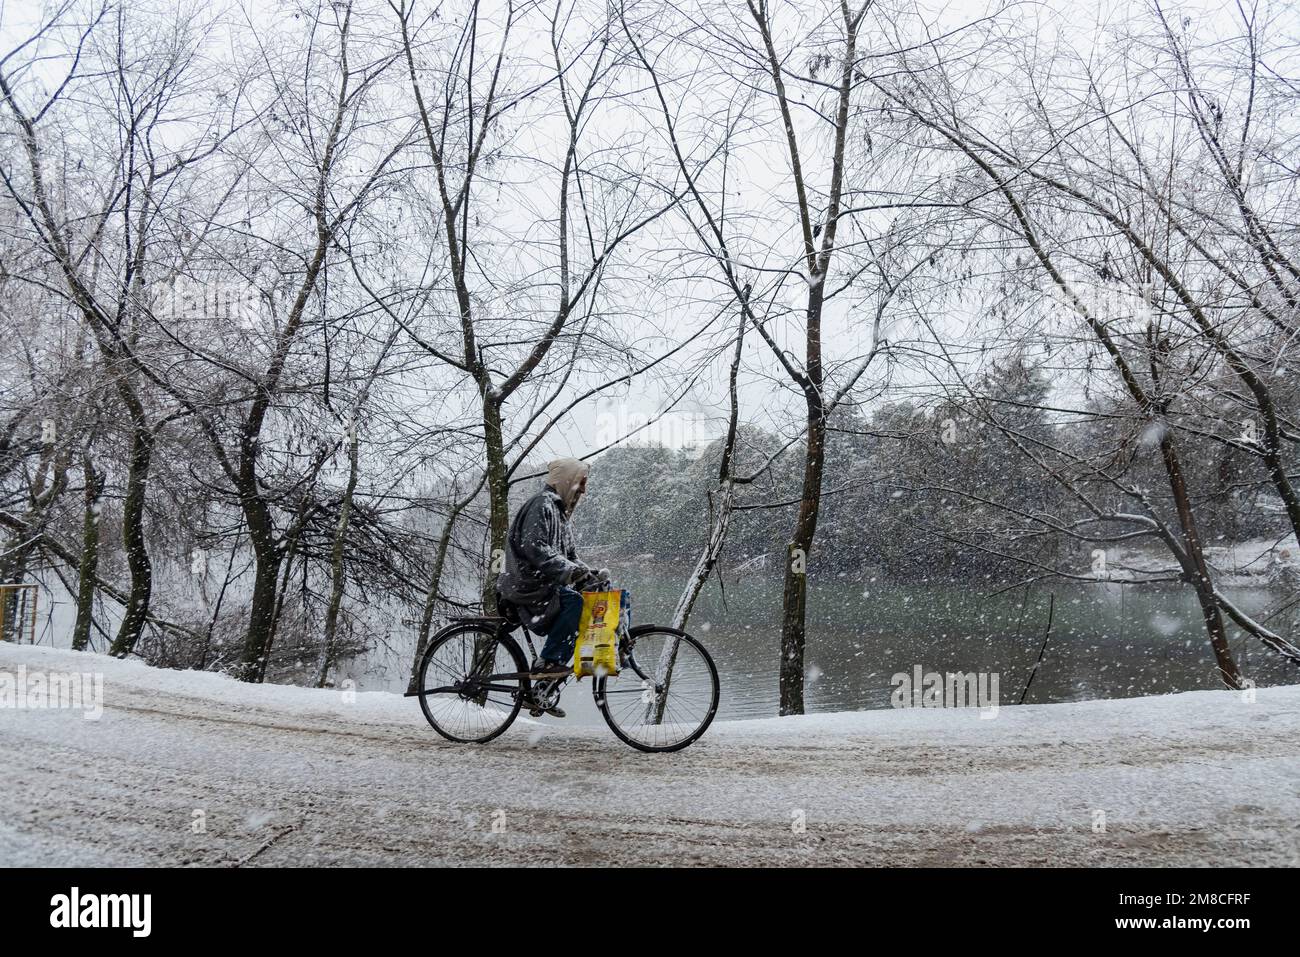 Un uomo guida una bicicletta lungo una strada innevata durante le nevicate. Il Kashmir ha ricevuto nevicate fresche, con le cali più alte della valle che hanno ricevuto nevicate da moderate a pesanti e nevicate da leggere a moderate in pianura, causando una visibilità distruttiva. Questo ha influito sulle operazioni di volo insieme alla chiusura dell'autostrada nazionale Srinagar-Jammu. Foto Stock